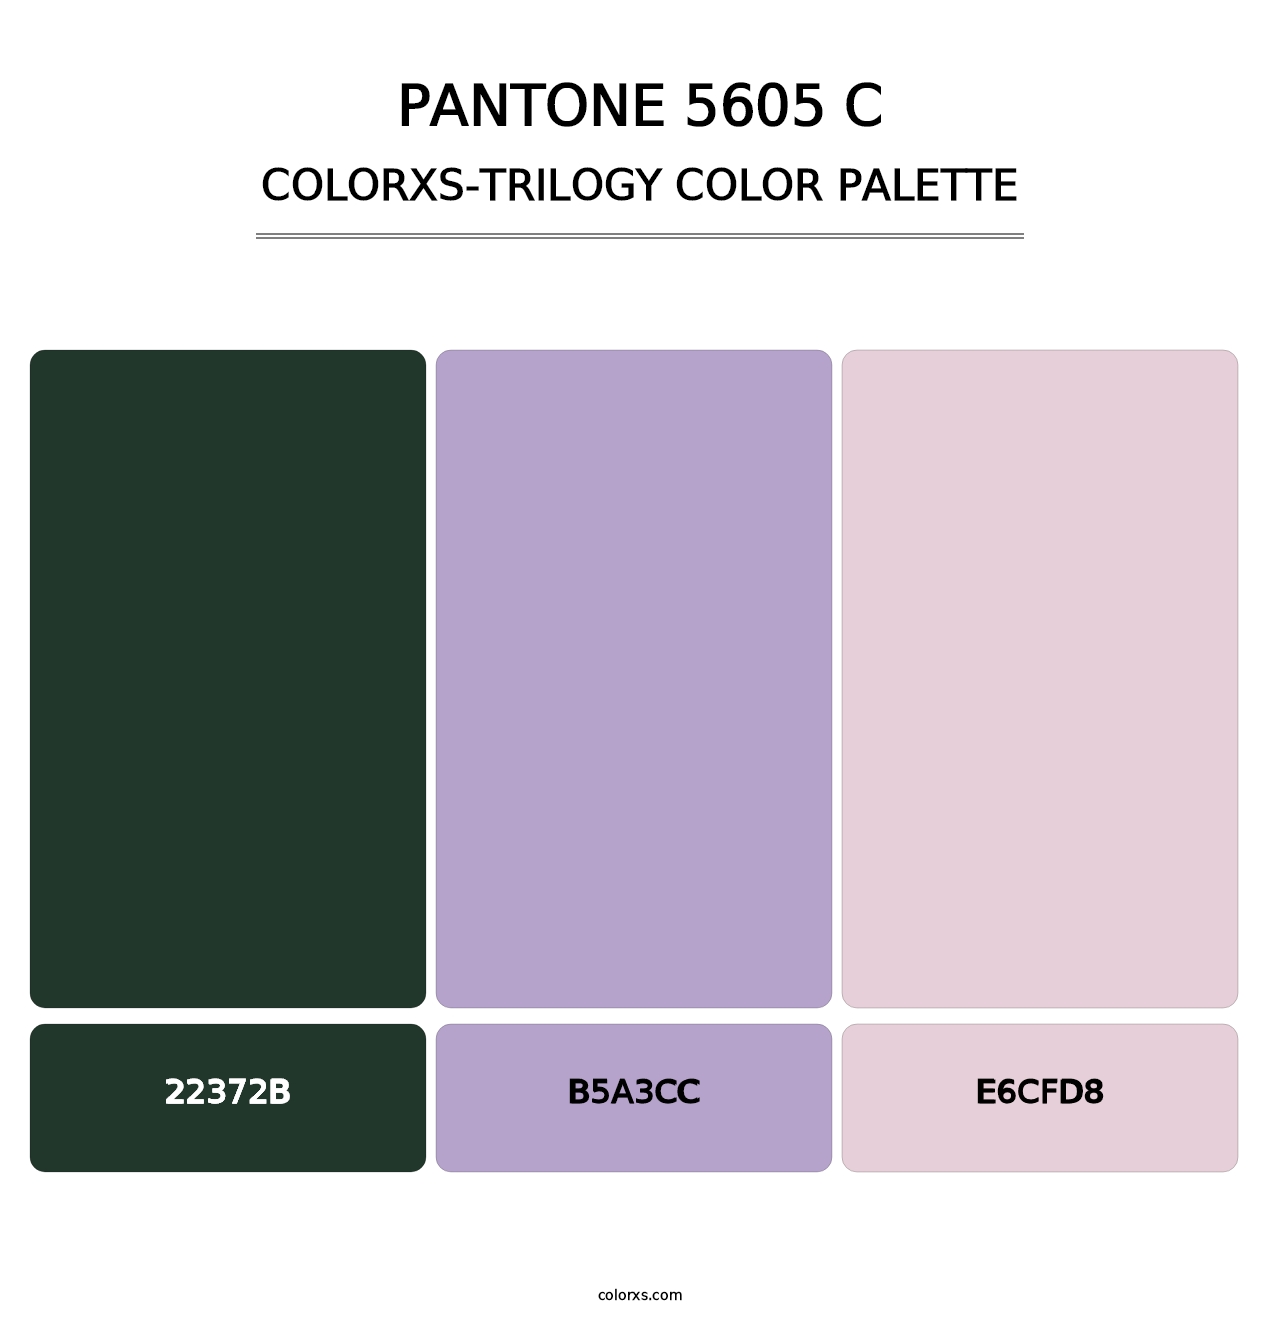 PANTONE 5605 C - Colorxs Trilogy Palette